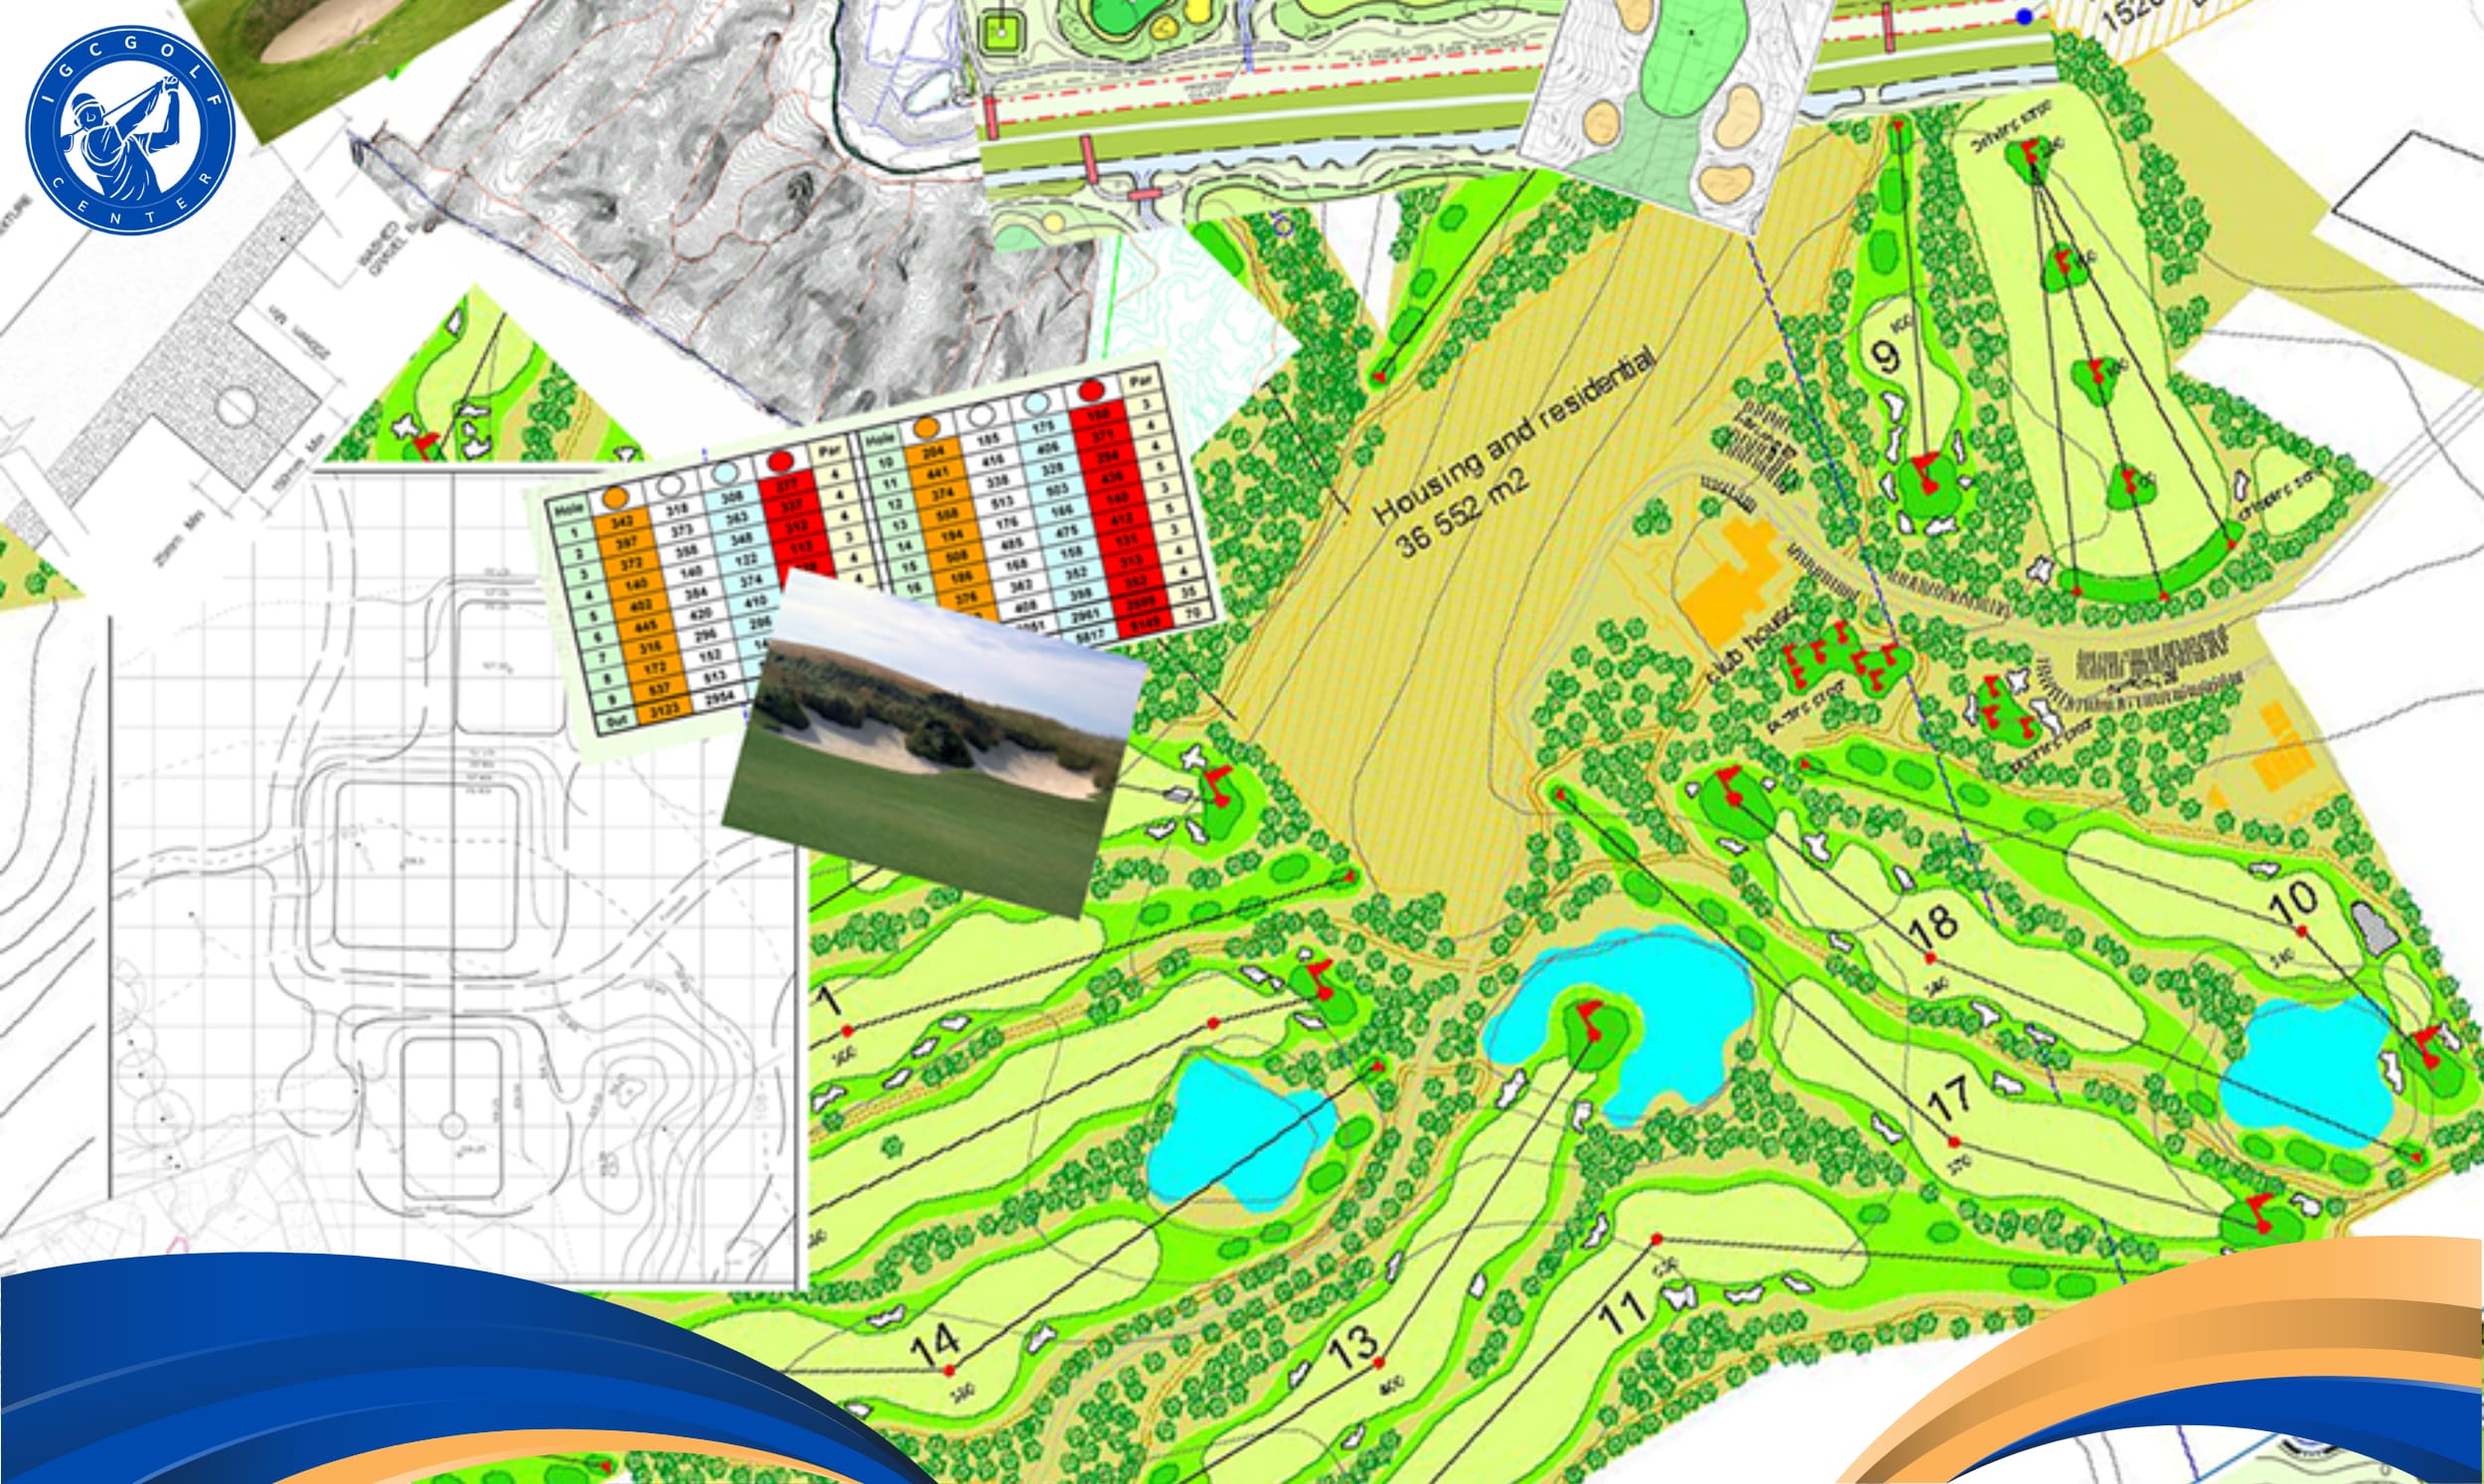 Thiết kế sân golf 18 lỗ theo địa hình sân